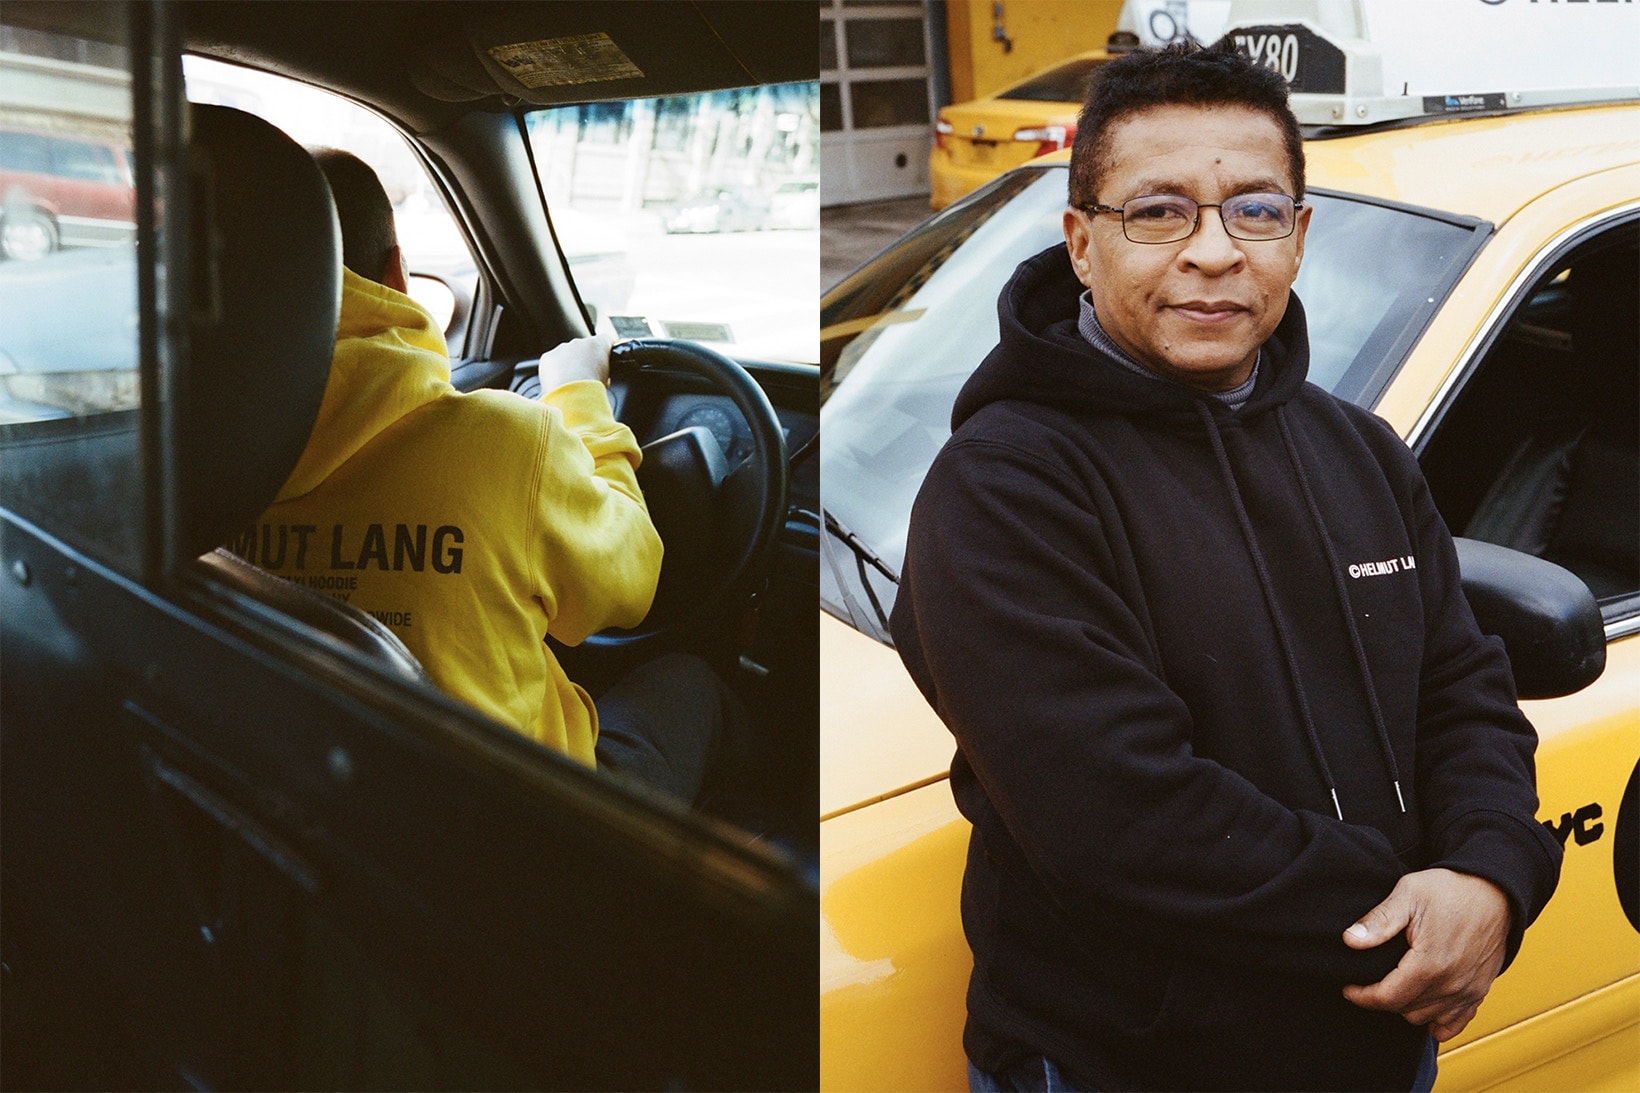 Helmut Lang Taxis Américains Etats Unis New York Hommage Tribute Jaune